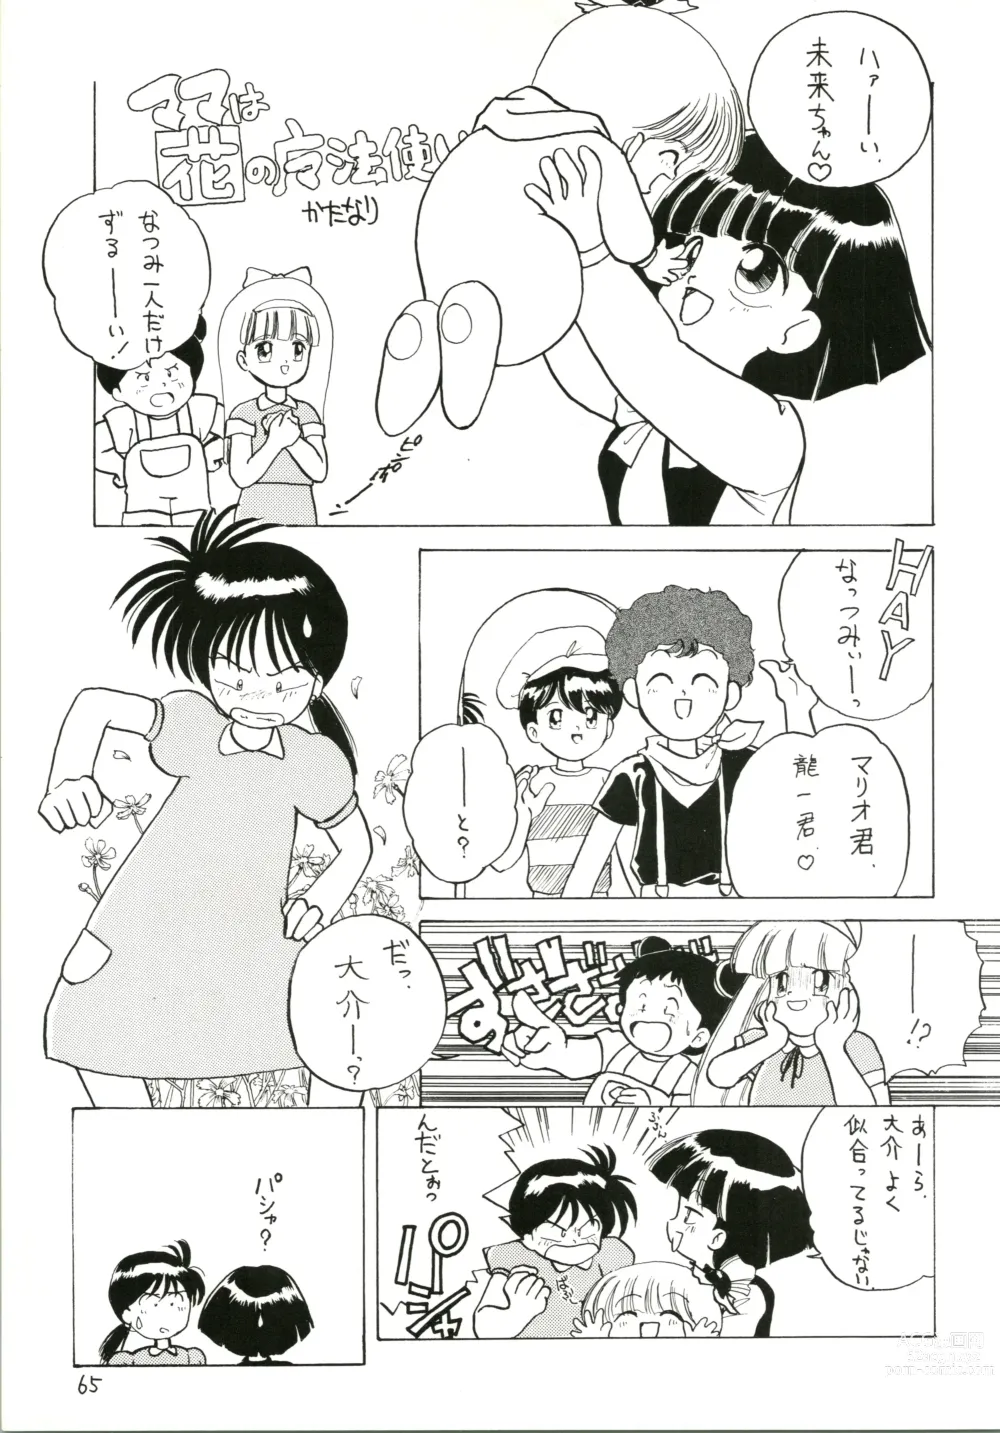 Page 65 of doujinshi Katatoki